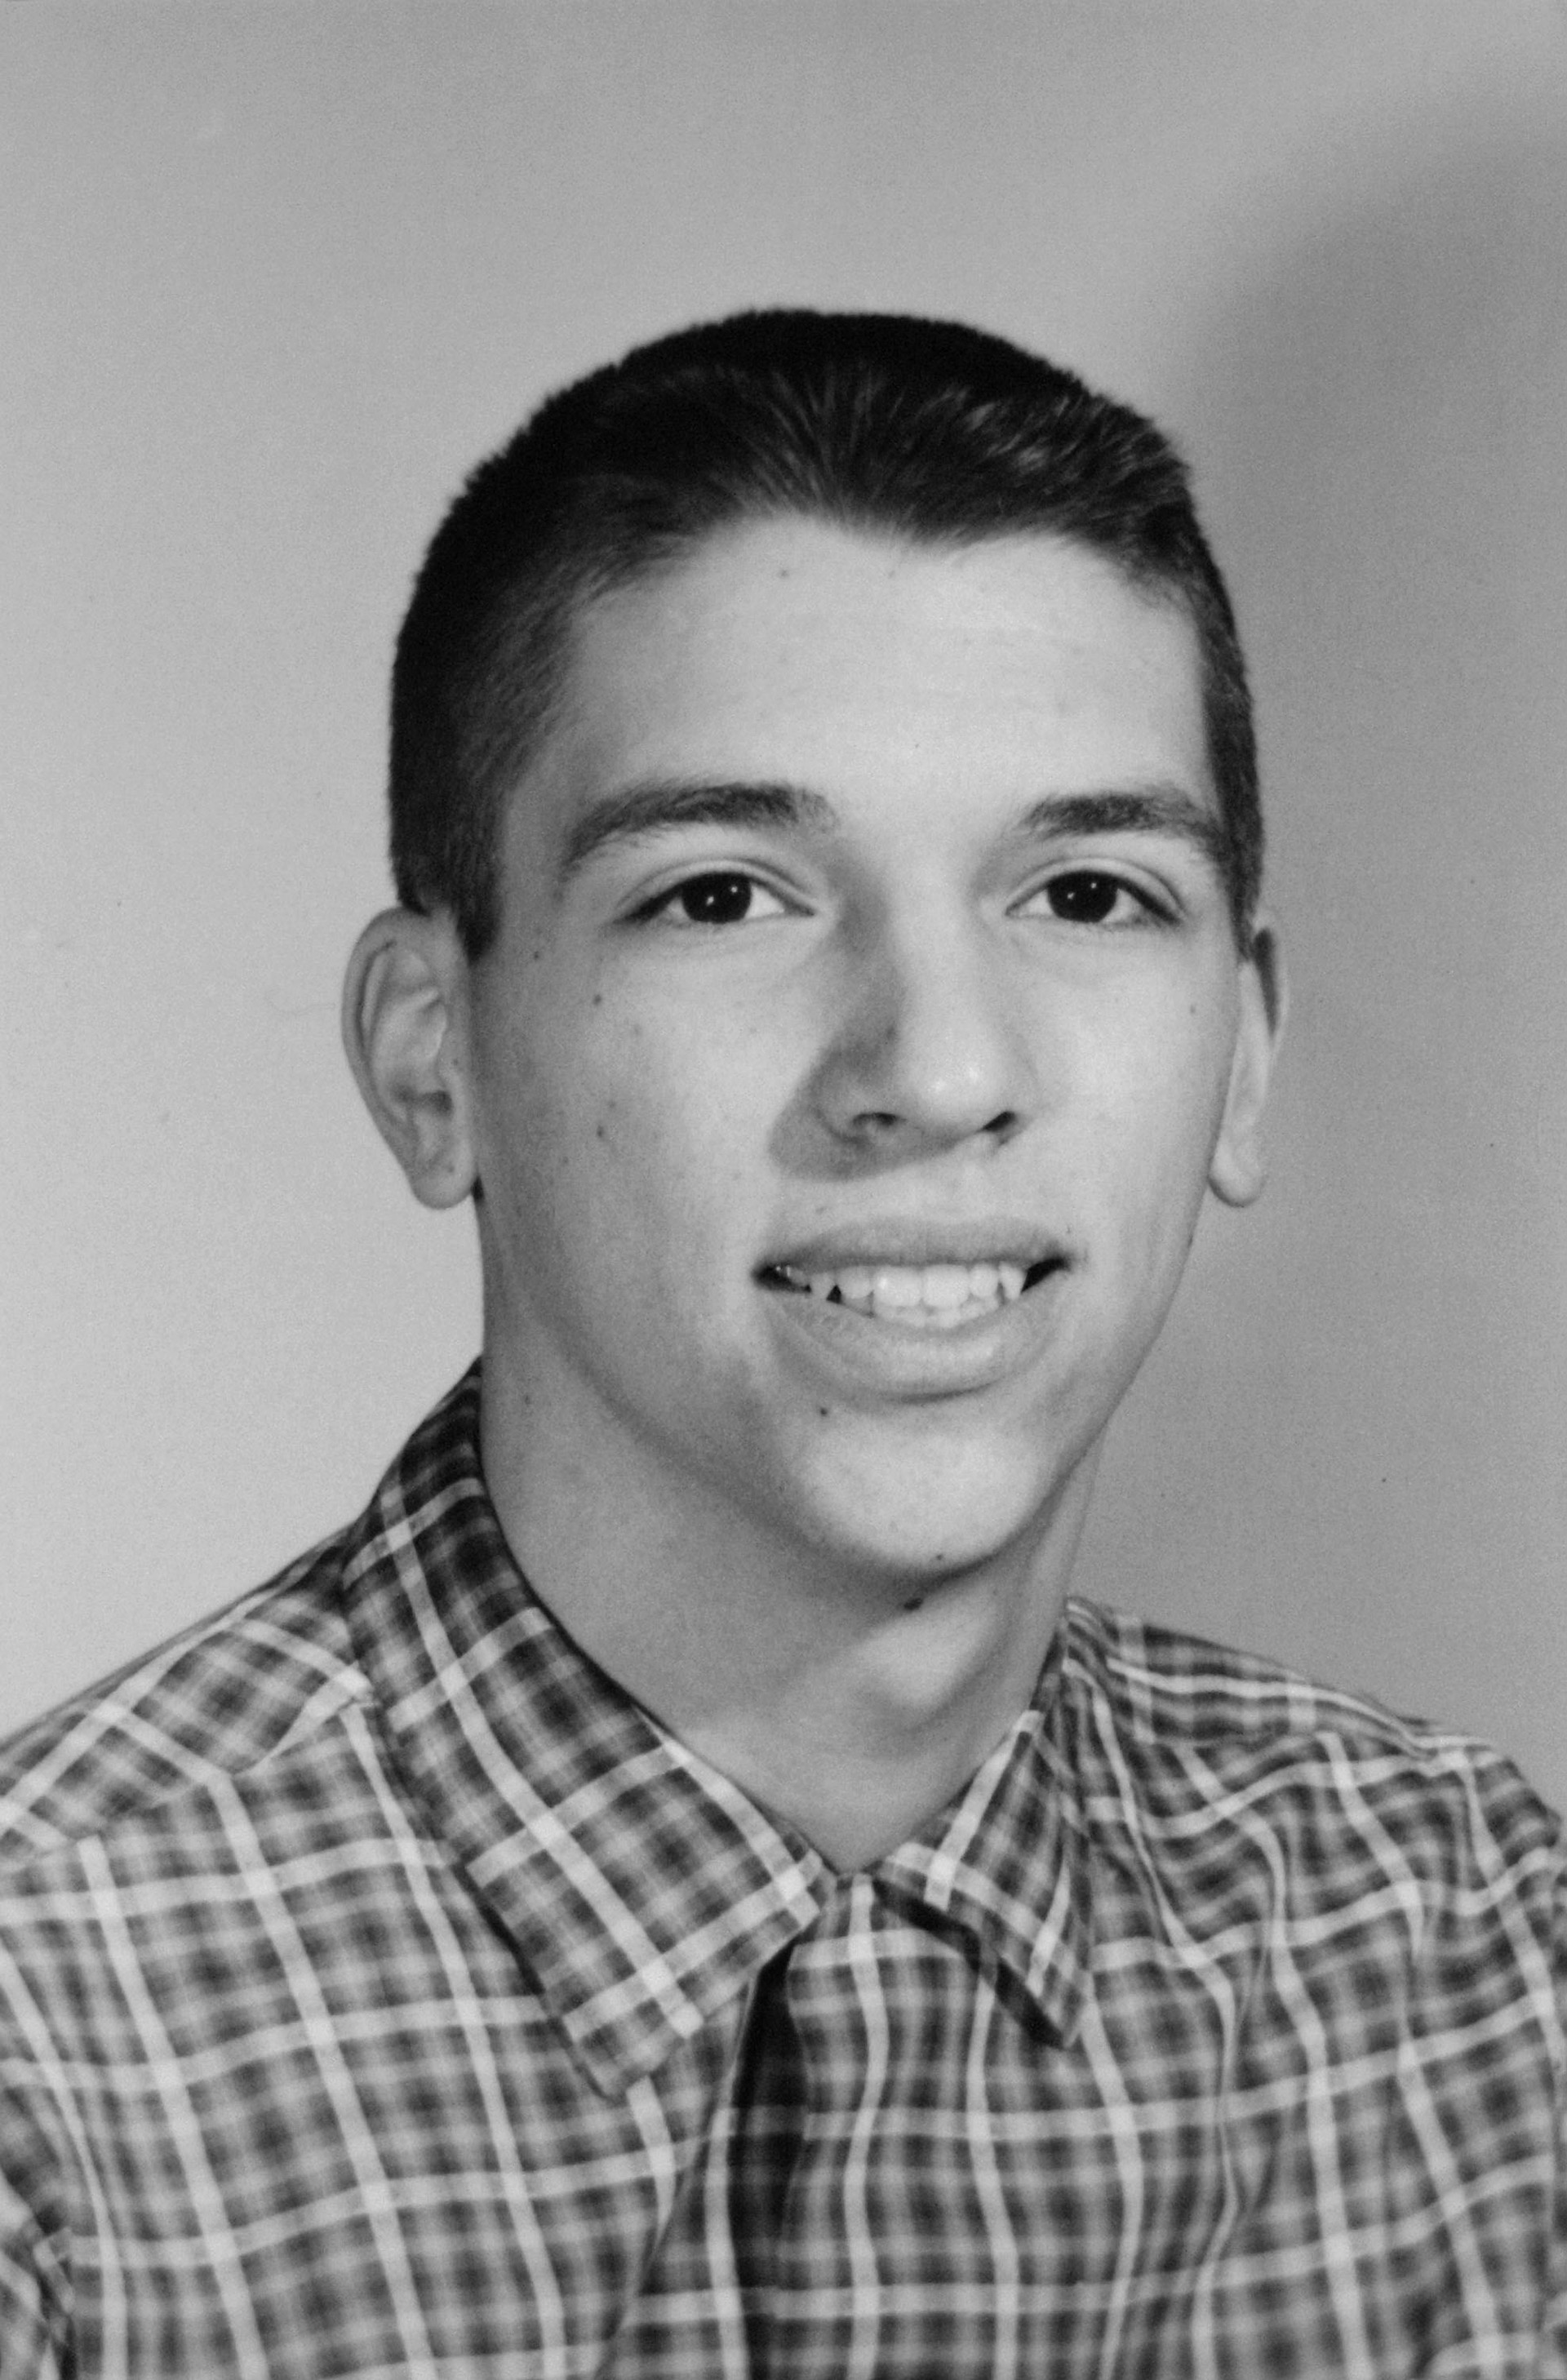 La foto de Robert Phillip Hanssen en el libro de la escuela secundaria  (Taft High School) en 1962 (Photo by Tim Boyle/Newsmakers, Courtesy of William Howard Taft High School)